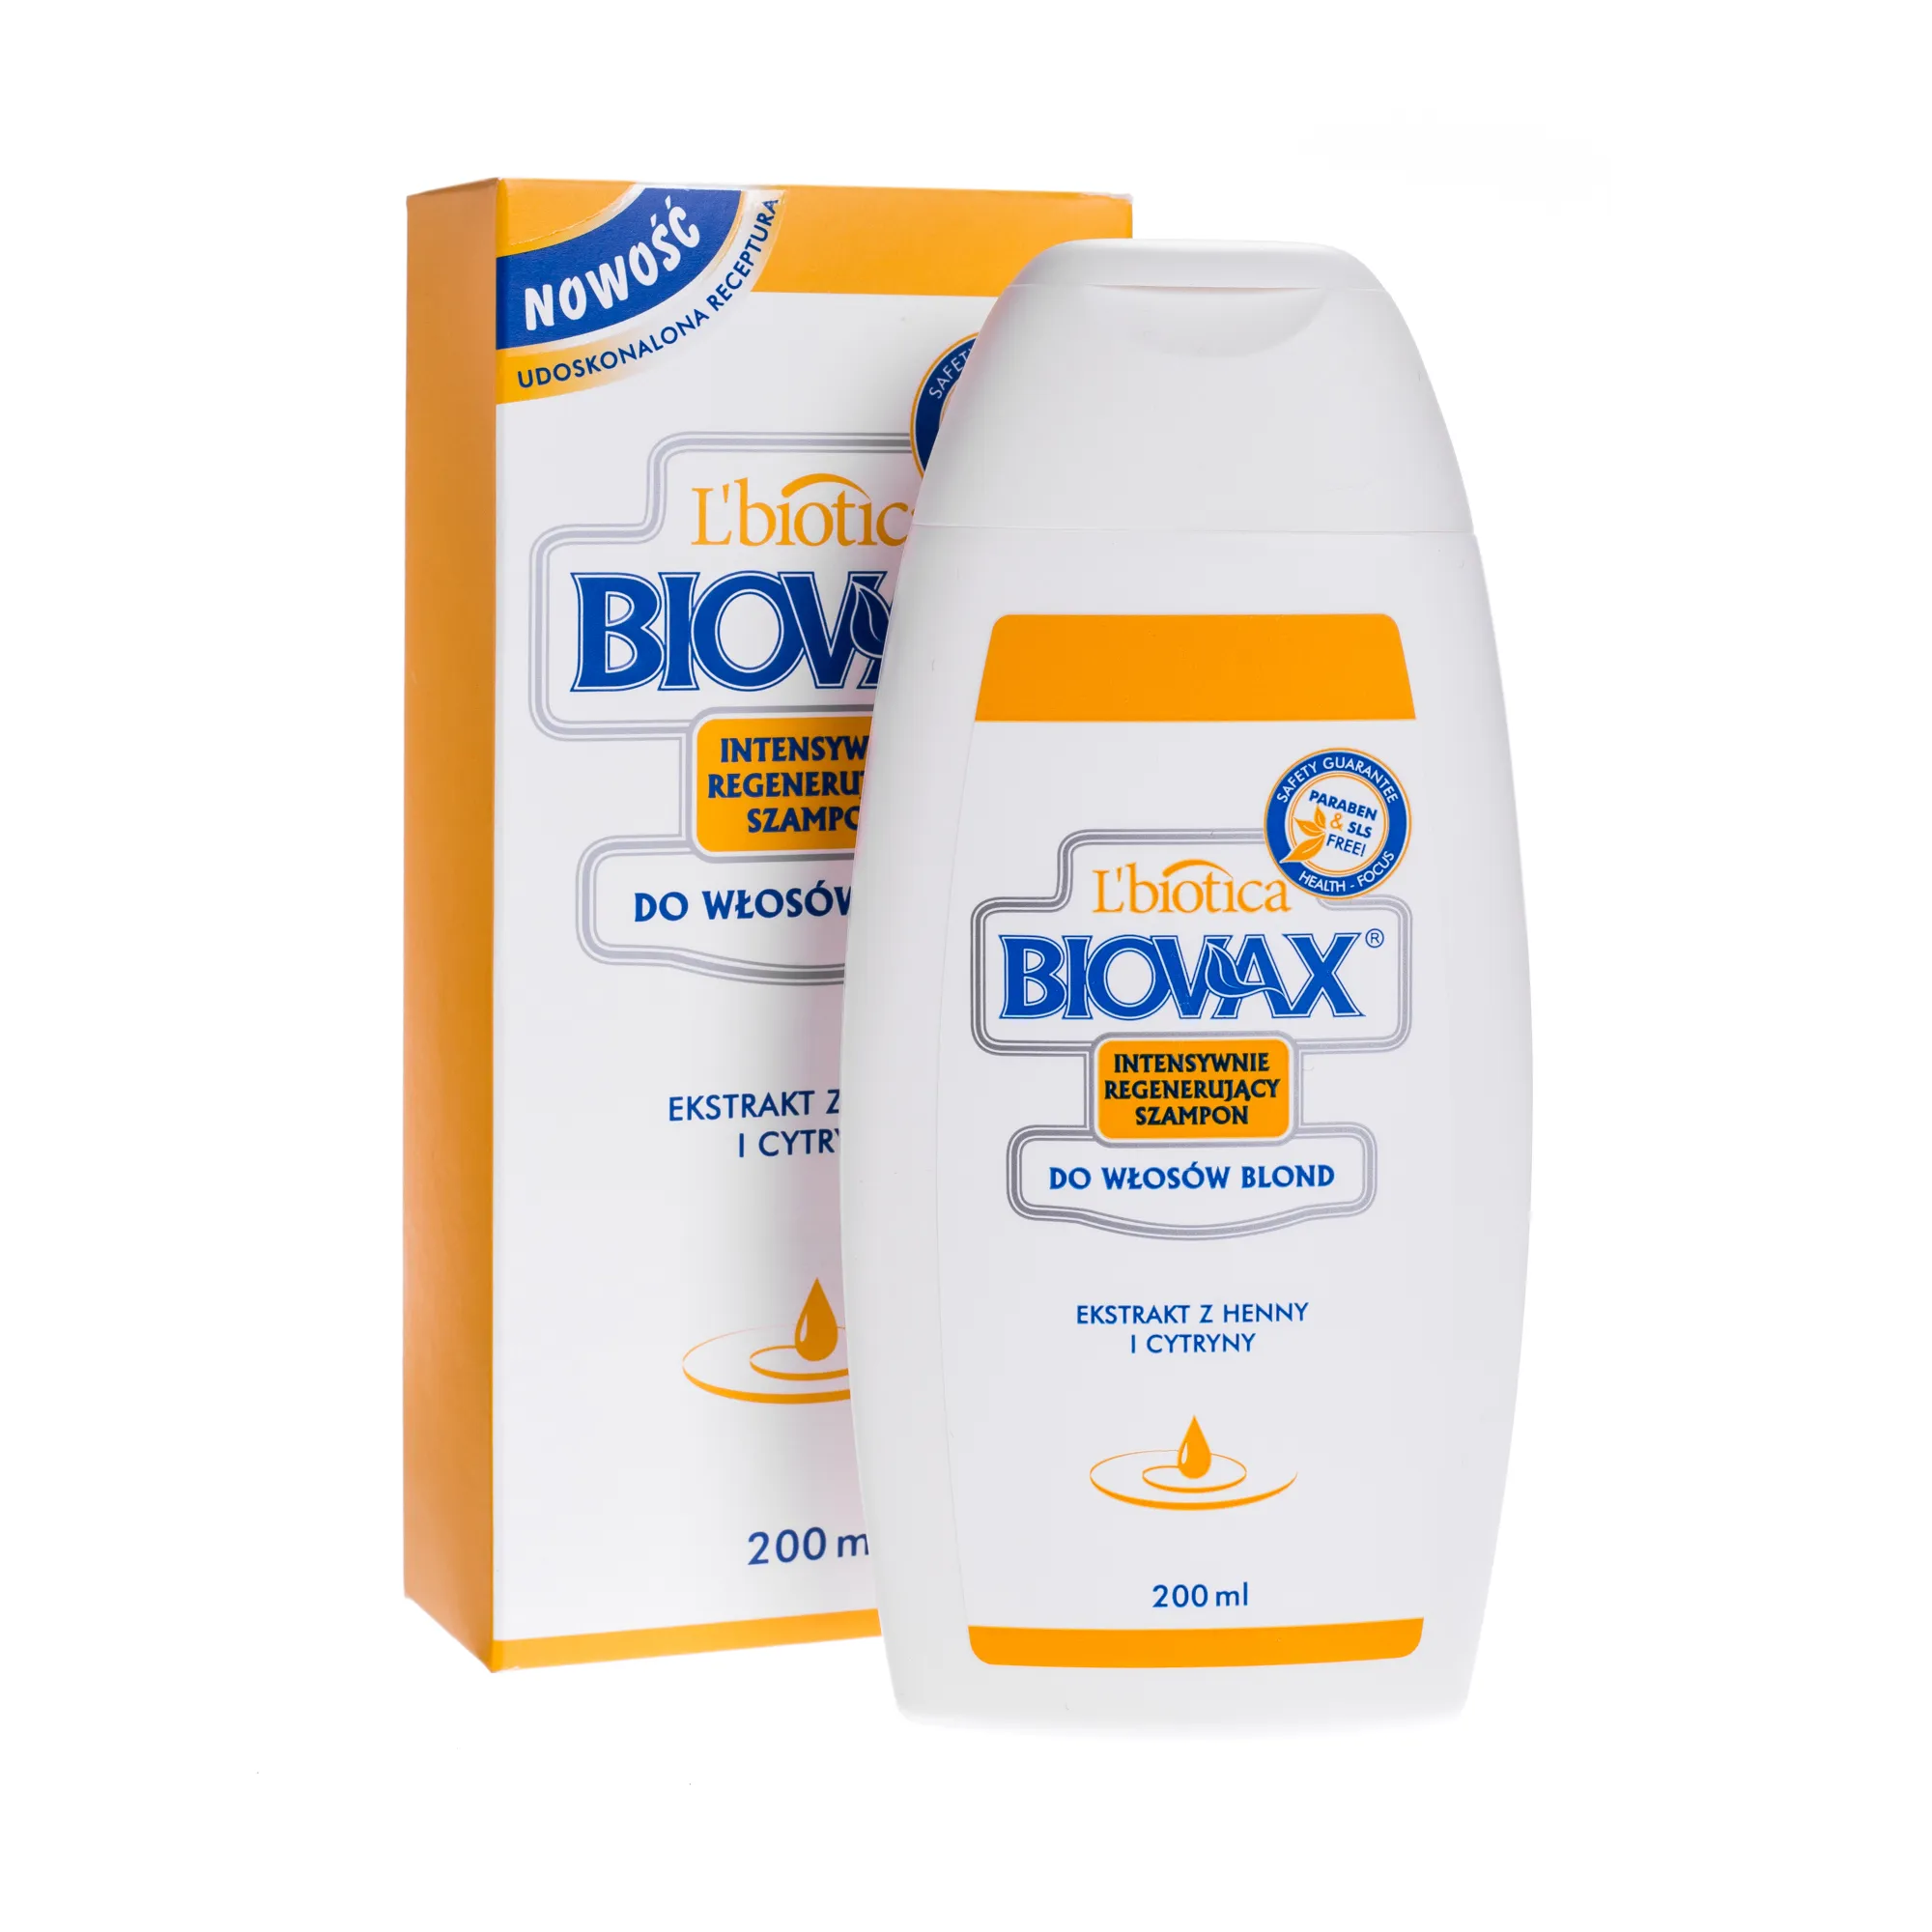 BIOVAX, szampon intensywnie regenerujący do włosów blond, 200ml 